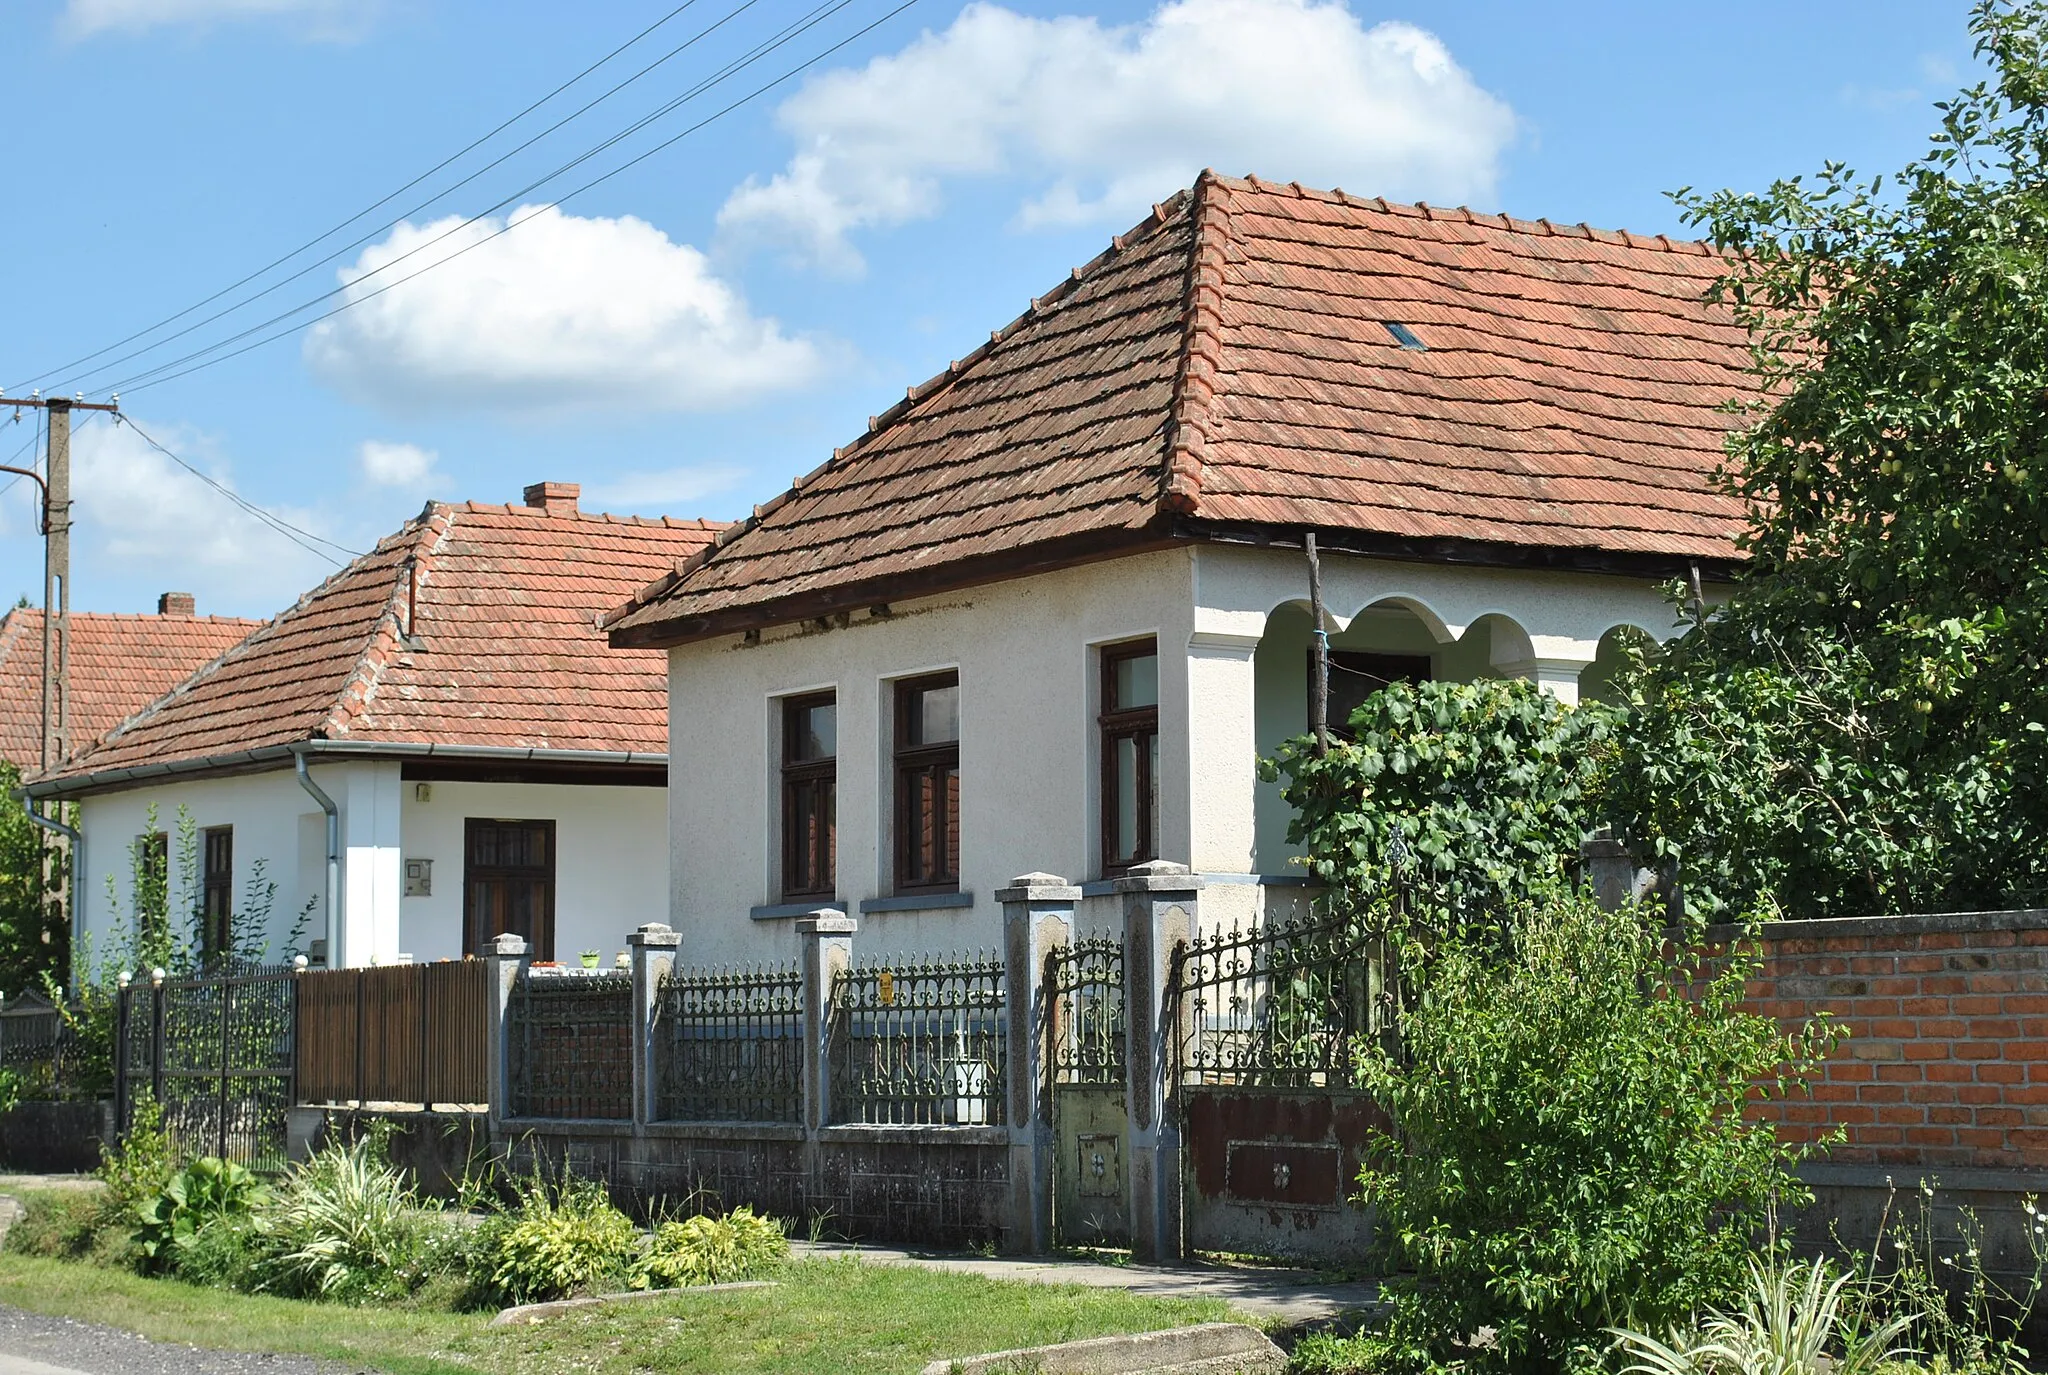 Photo showing: Fő u., Galvács, Hungary